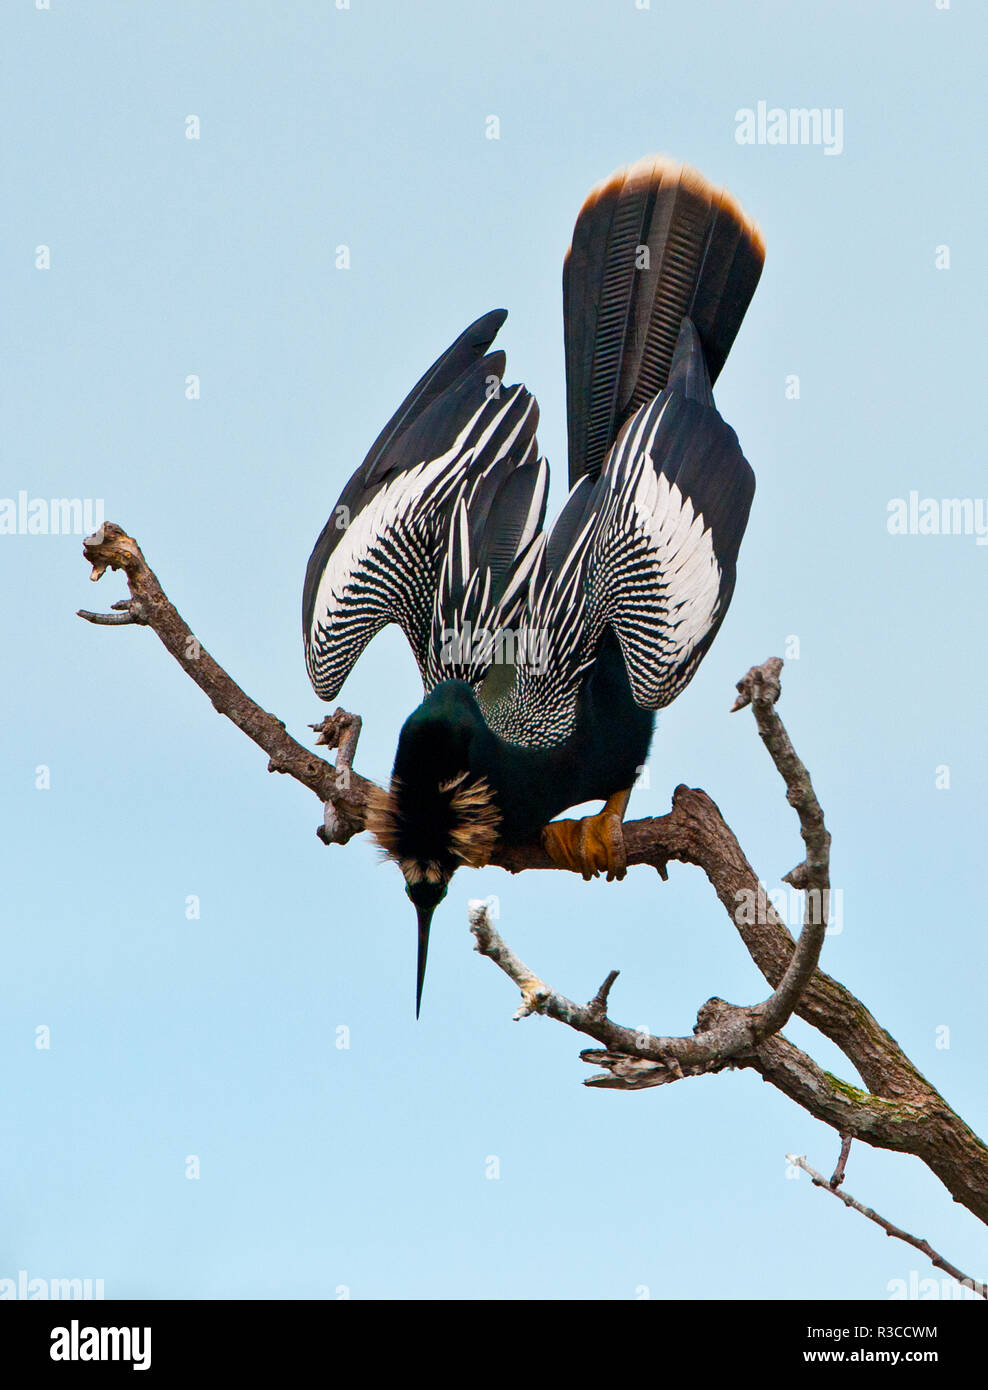 Stati Uniti d'America, Florida, Venezia. Audubon Rookery, anhinga maschio nella visualizzazione struttura ad albero Foto Stock